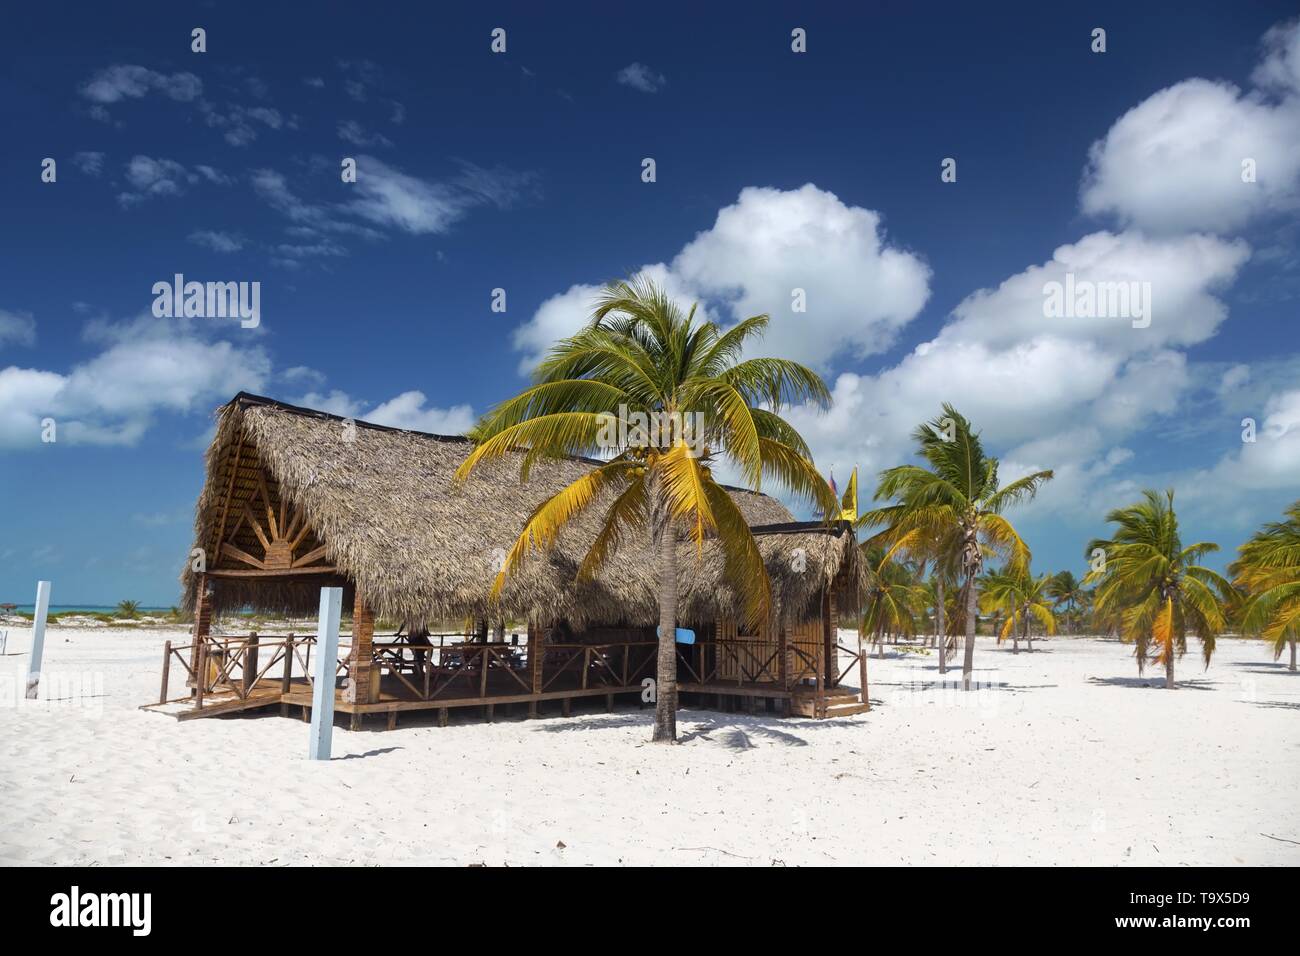 Cabaña de madera en la playa Bar y Restaurante Grill en la Playa Sirena playa tropical en Cayo Largo del Sur Complejo Turístico Mar Caribe Costa Cubana Foto de stock